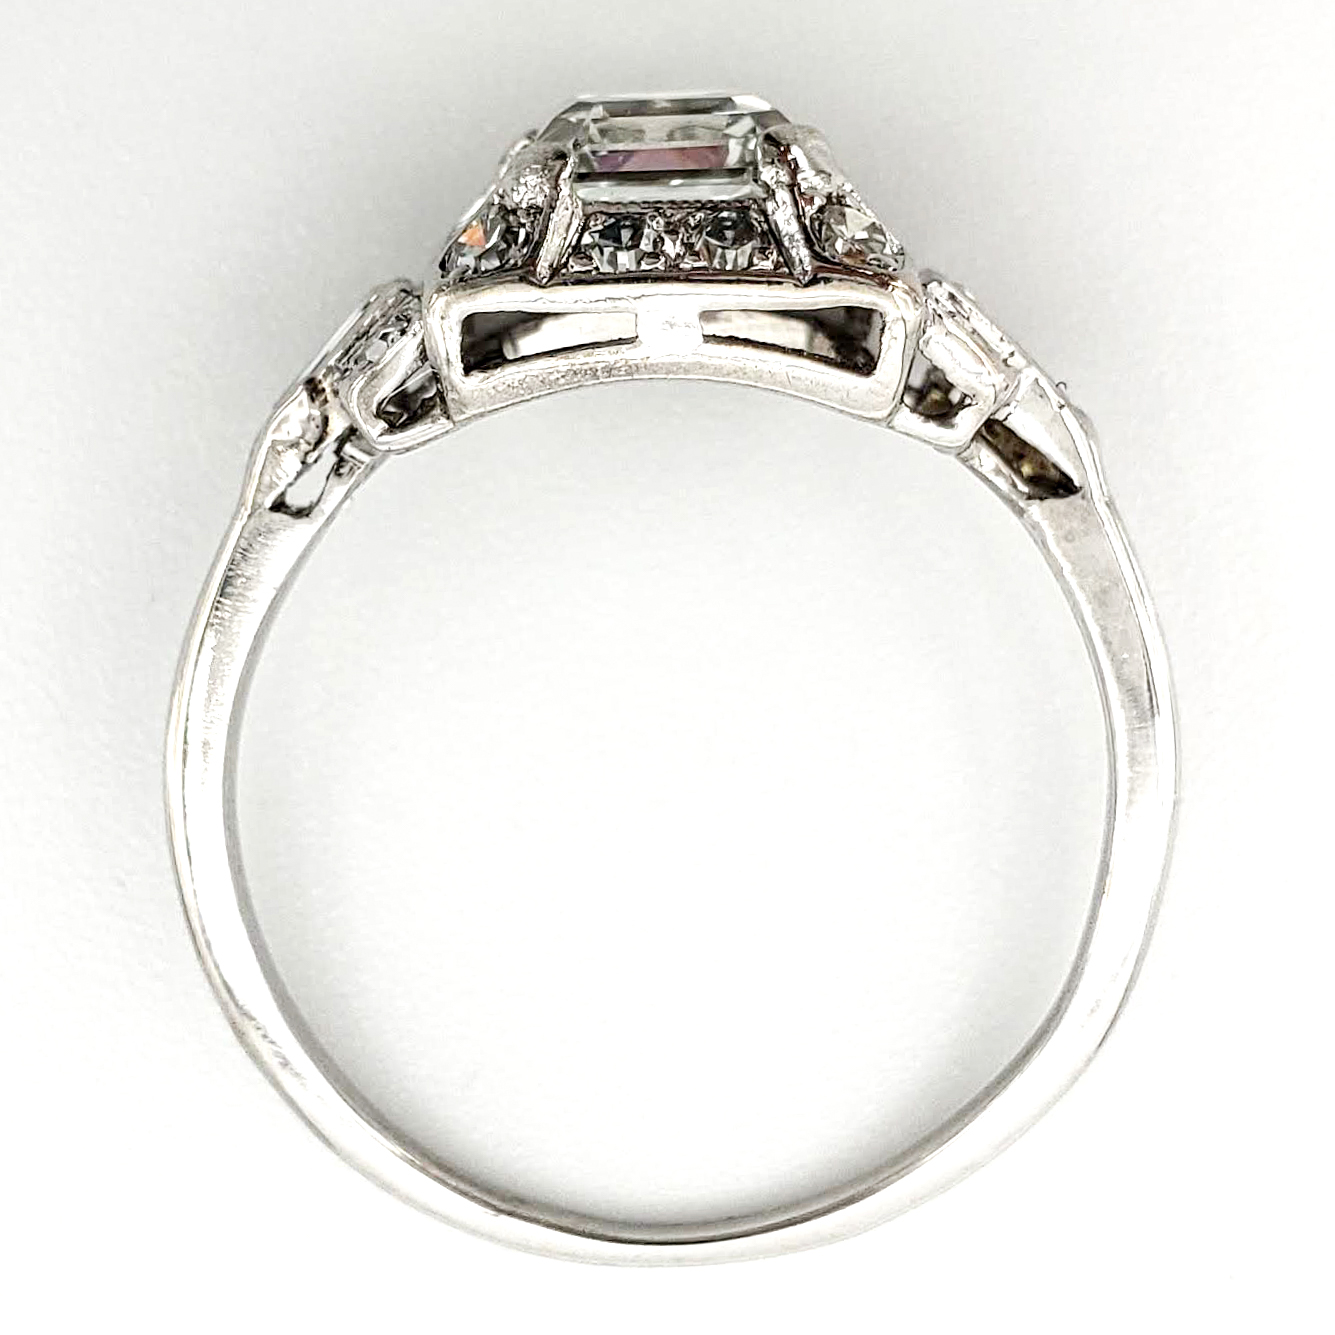 Vintage Platinum Engagement Ring With 1.05 Carat Asscher Cut Diamond GIA – H VS1